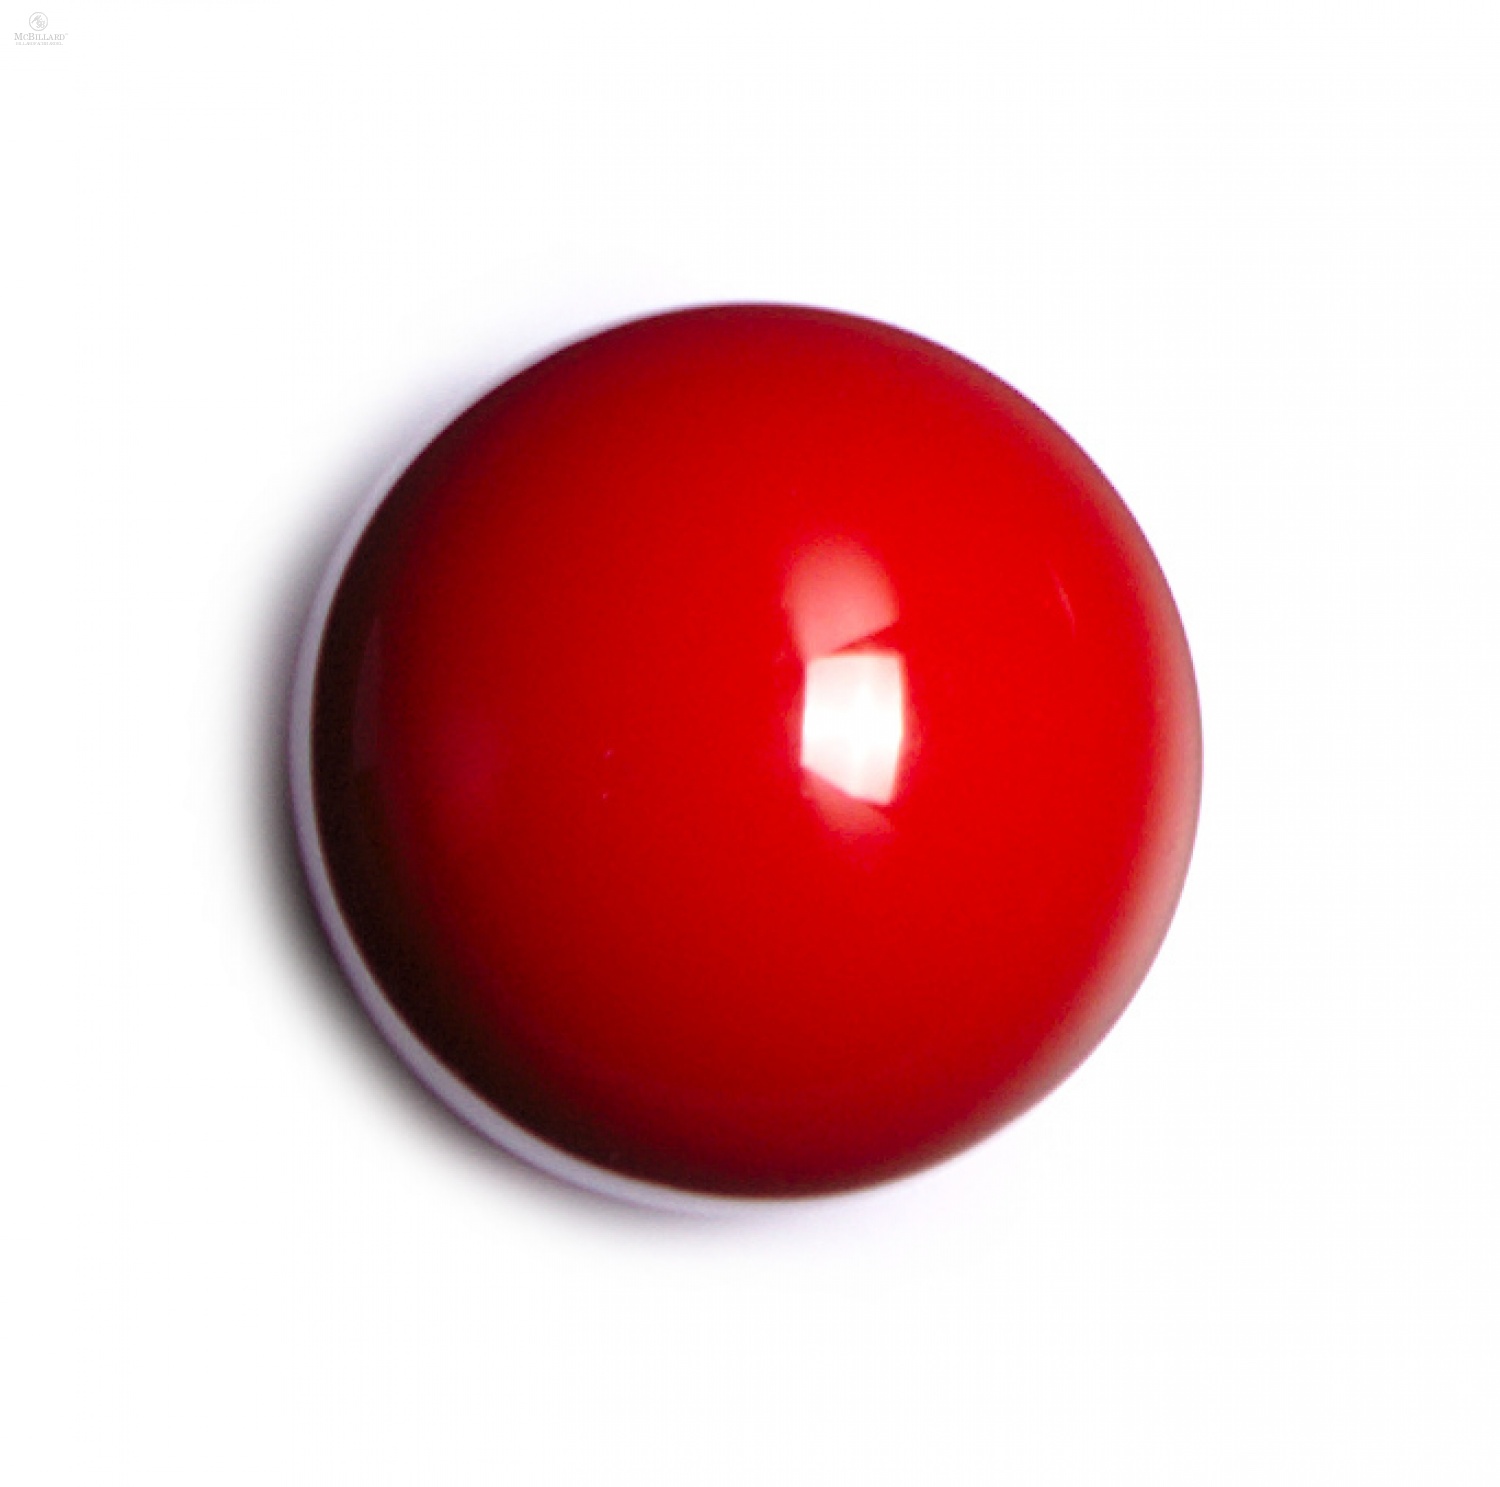 Включи куля. Красный бильярдный шар. Красный биллиардный шарик. Красный шар для бильярда. Шар для бильярда без фона.